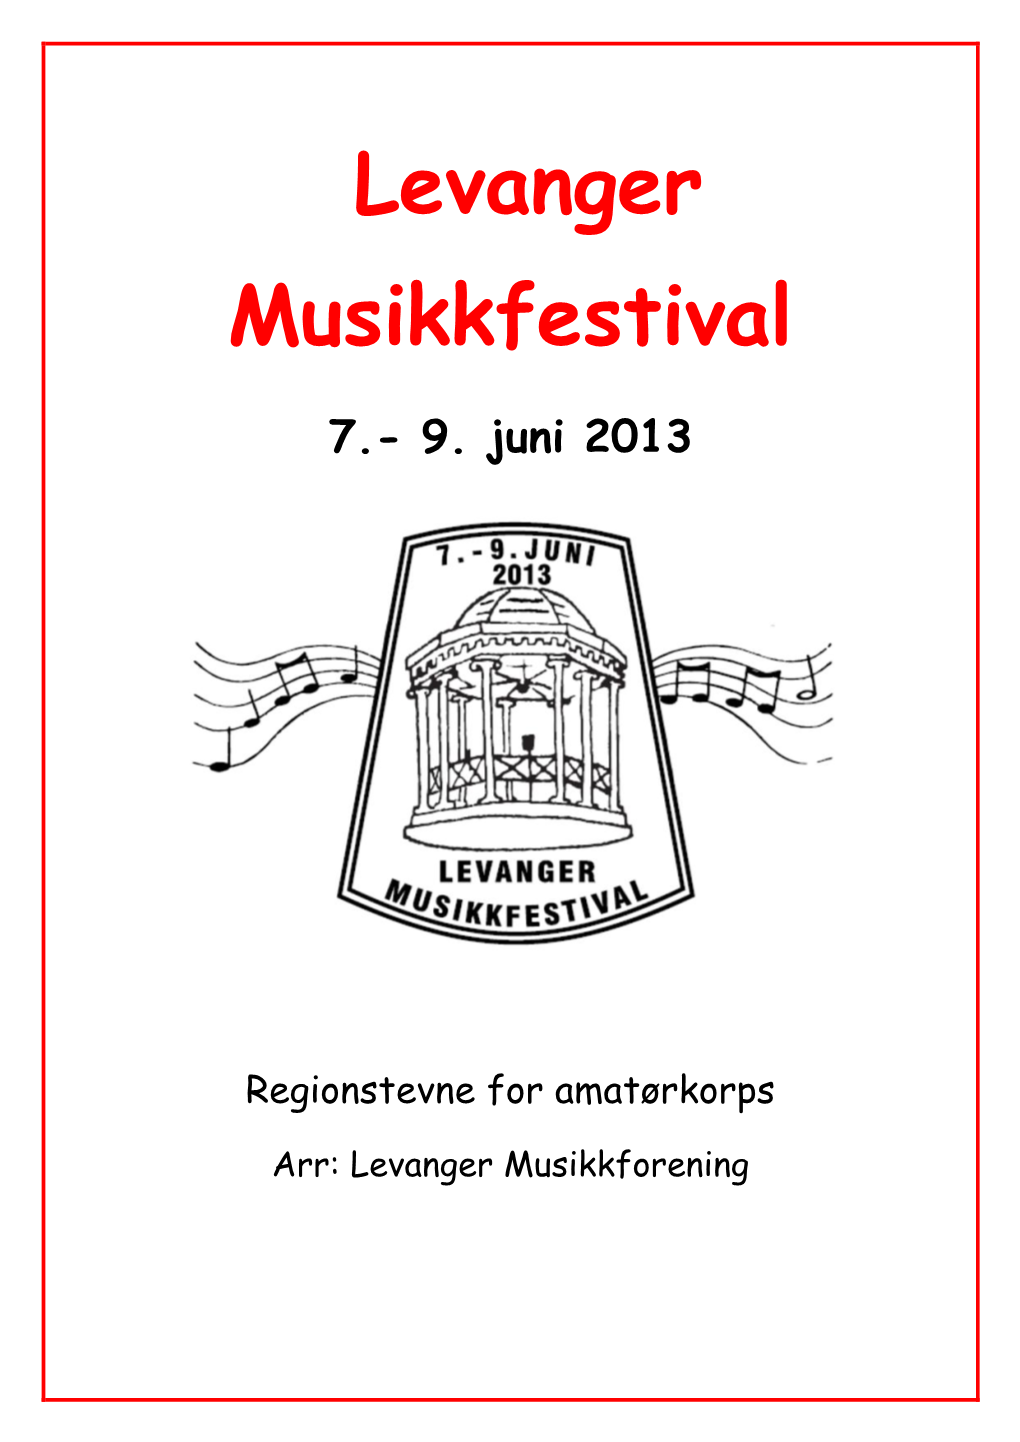 Levanger Musikkfestival